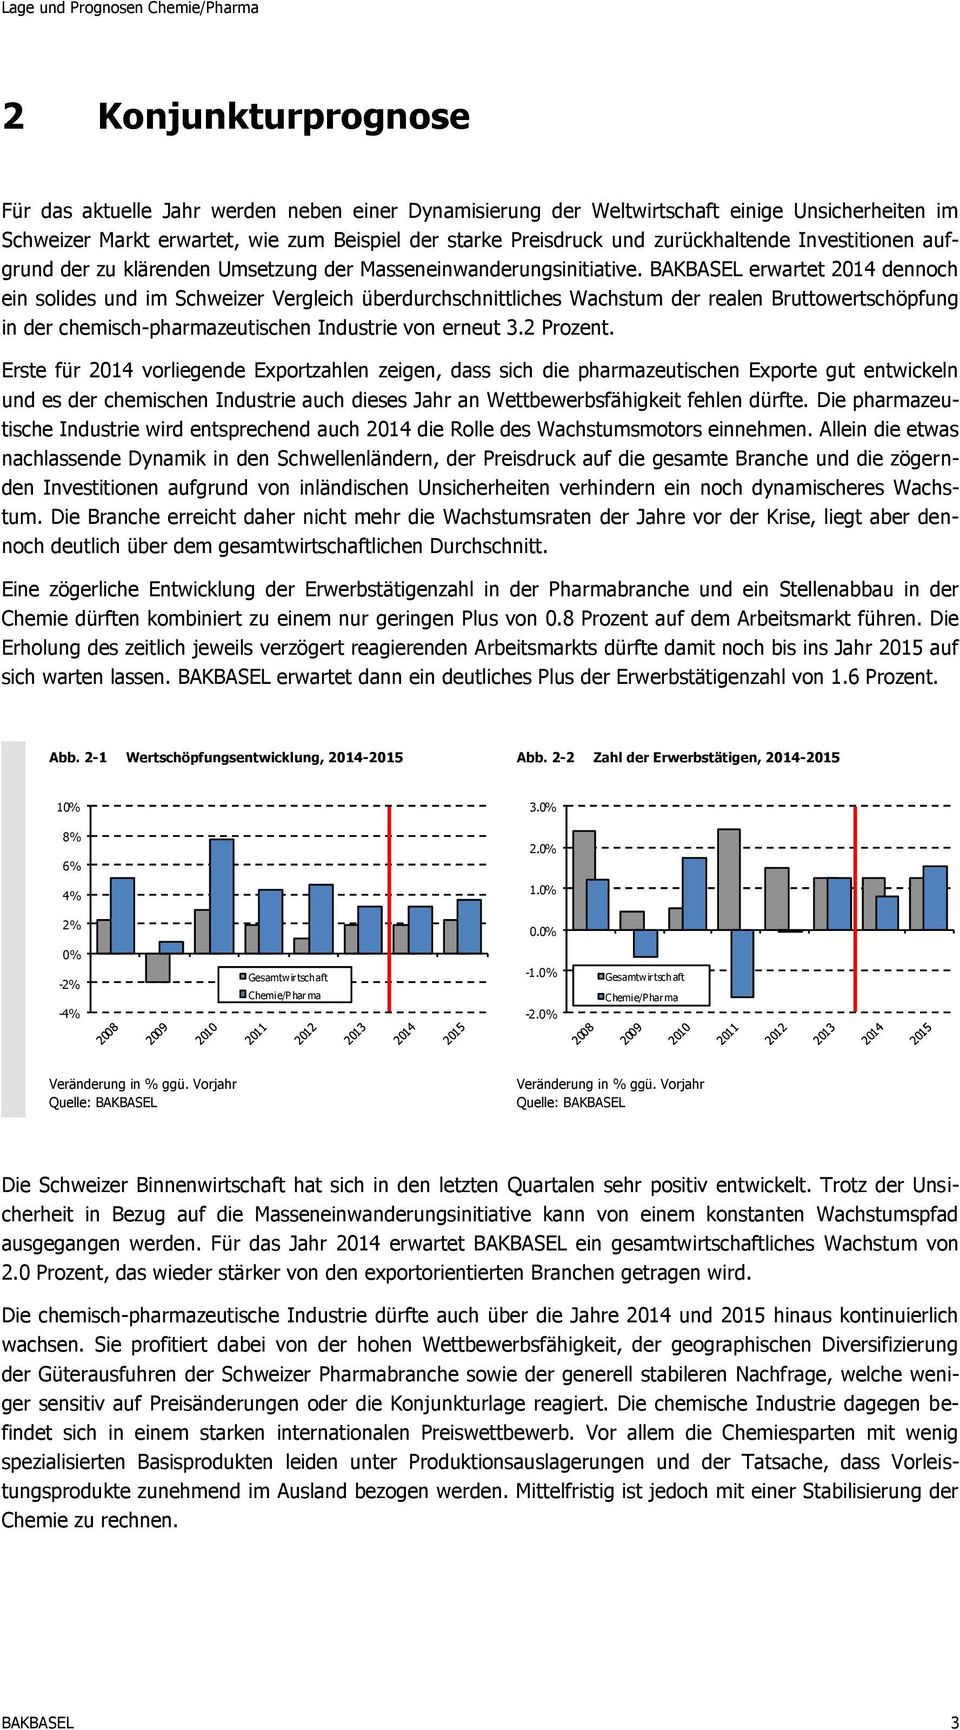 BAKBASEL erwartet 2014 dennoch ein solides und im Schweizer Vergleich überdurchschnittliches Wachstum der realen Bruttowertschöpfung in der chemisch-pharmazeutischen Industrie von erneut 3.2 Prozent.